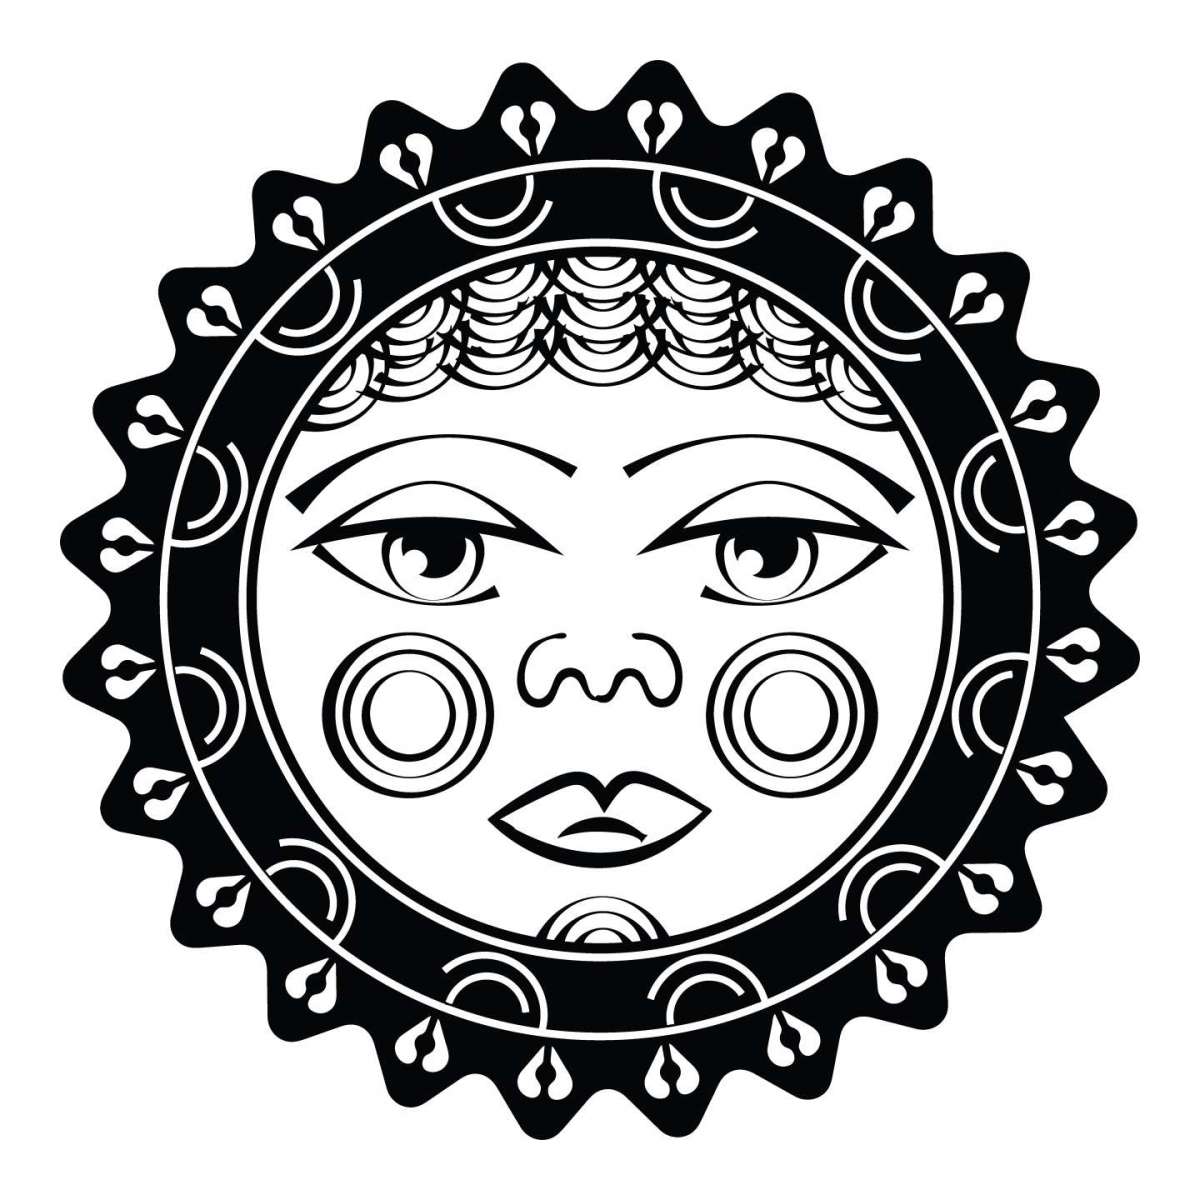 Sole maori per tatuaggio con aree in nero